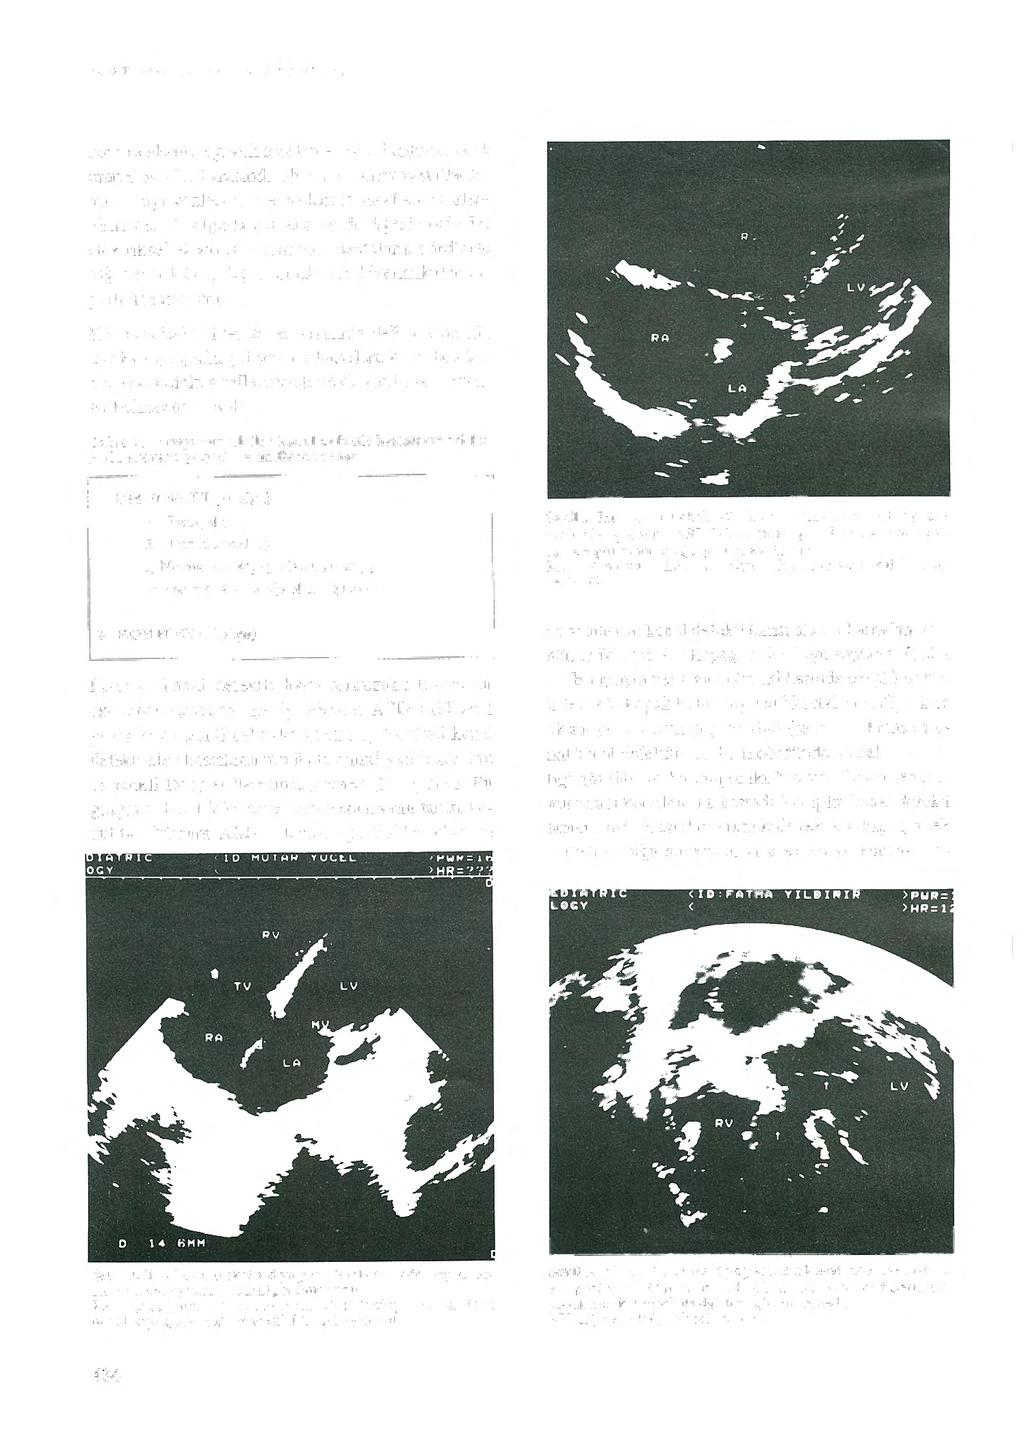 Tiirk Kardiyol Dern Arş 1996; 24: 433-437 ların telekardiyografik incelemesinde, kardiyetorasik oran 0,56-0.70 arasında olup, pulmoner vaskülaritenin arttığ ı gözlendi.